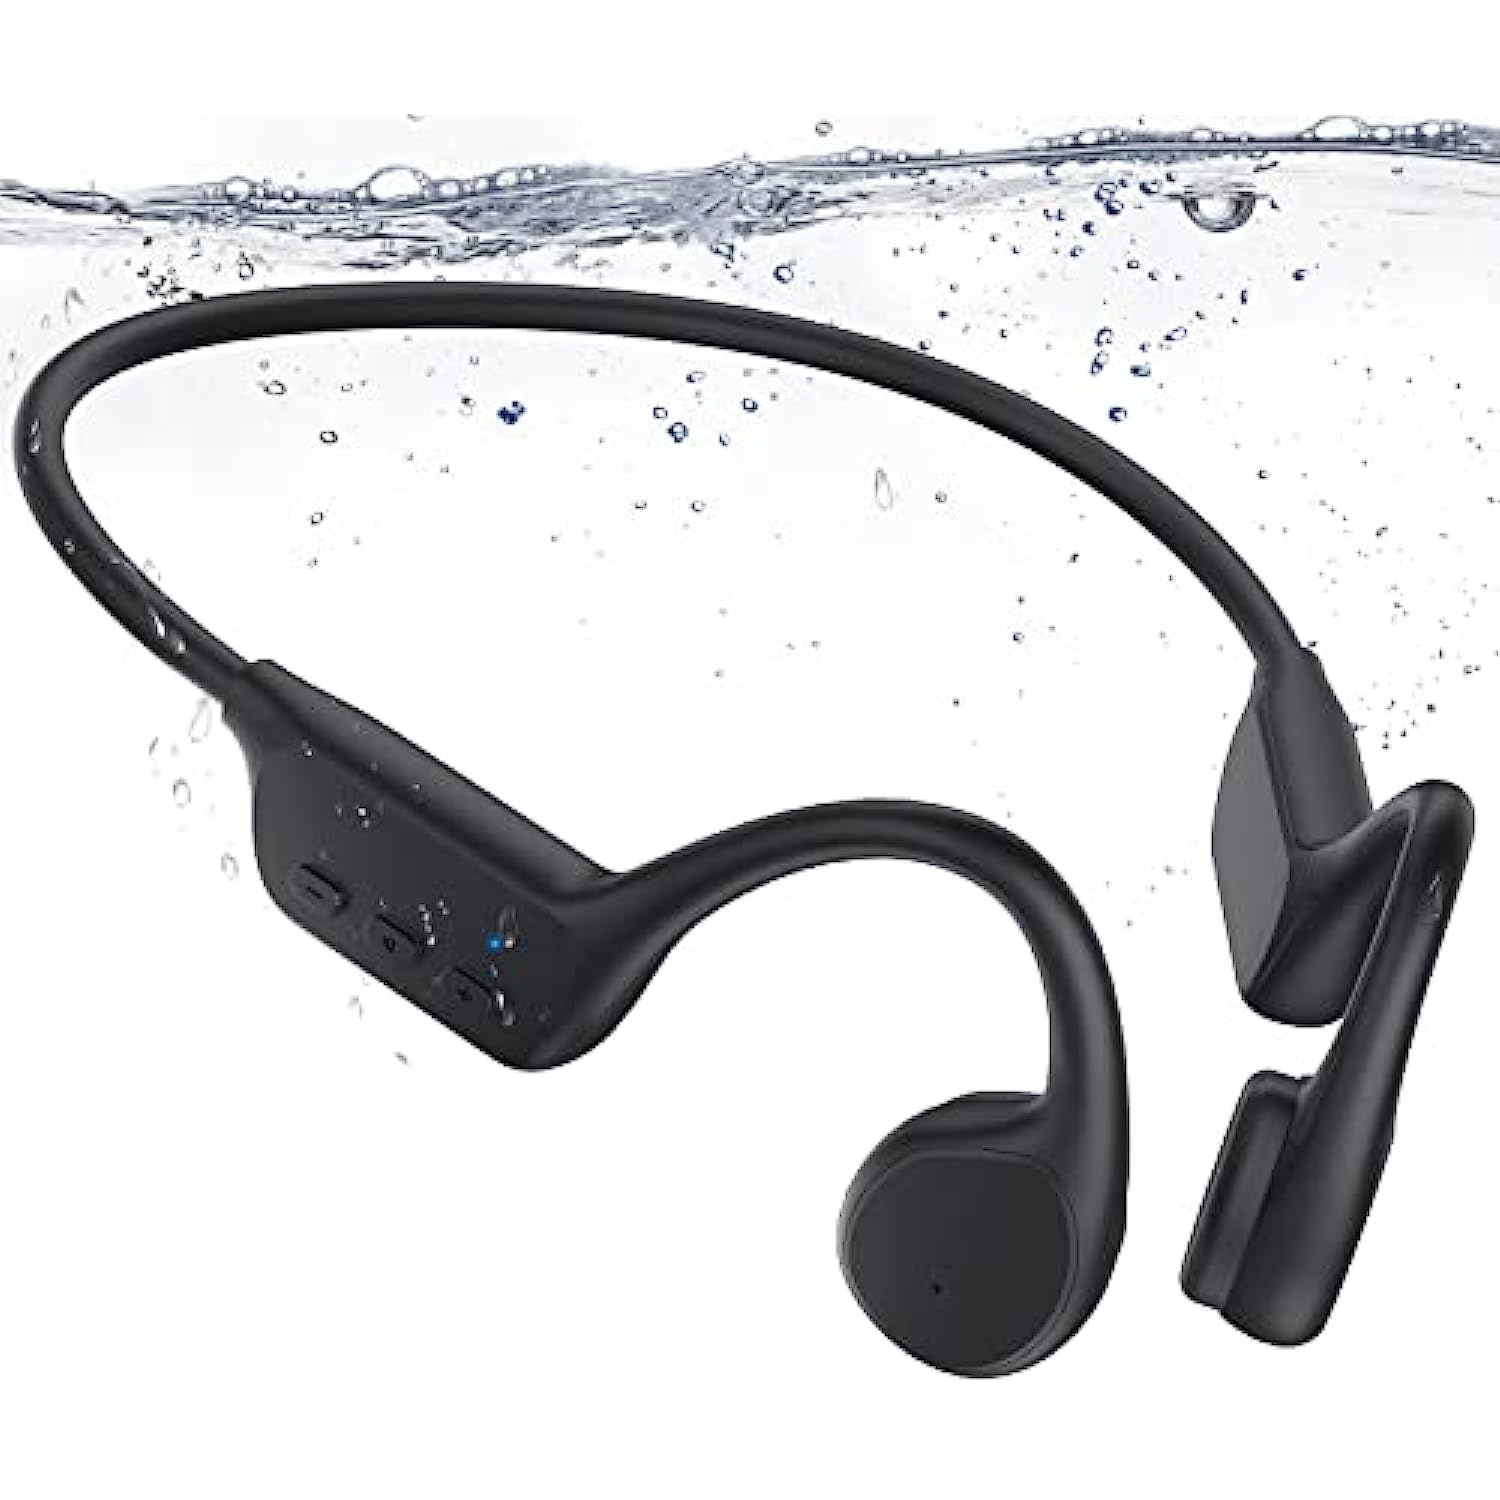 Auriculares Bluetooth impermeables de conducción ósea – Auriculares de  natación ultraligeros IP68 impermeables Bluetooth 5.0 Auriculares  deportivos